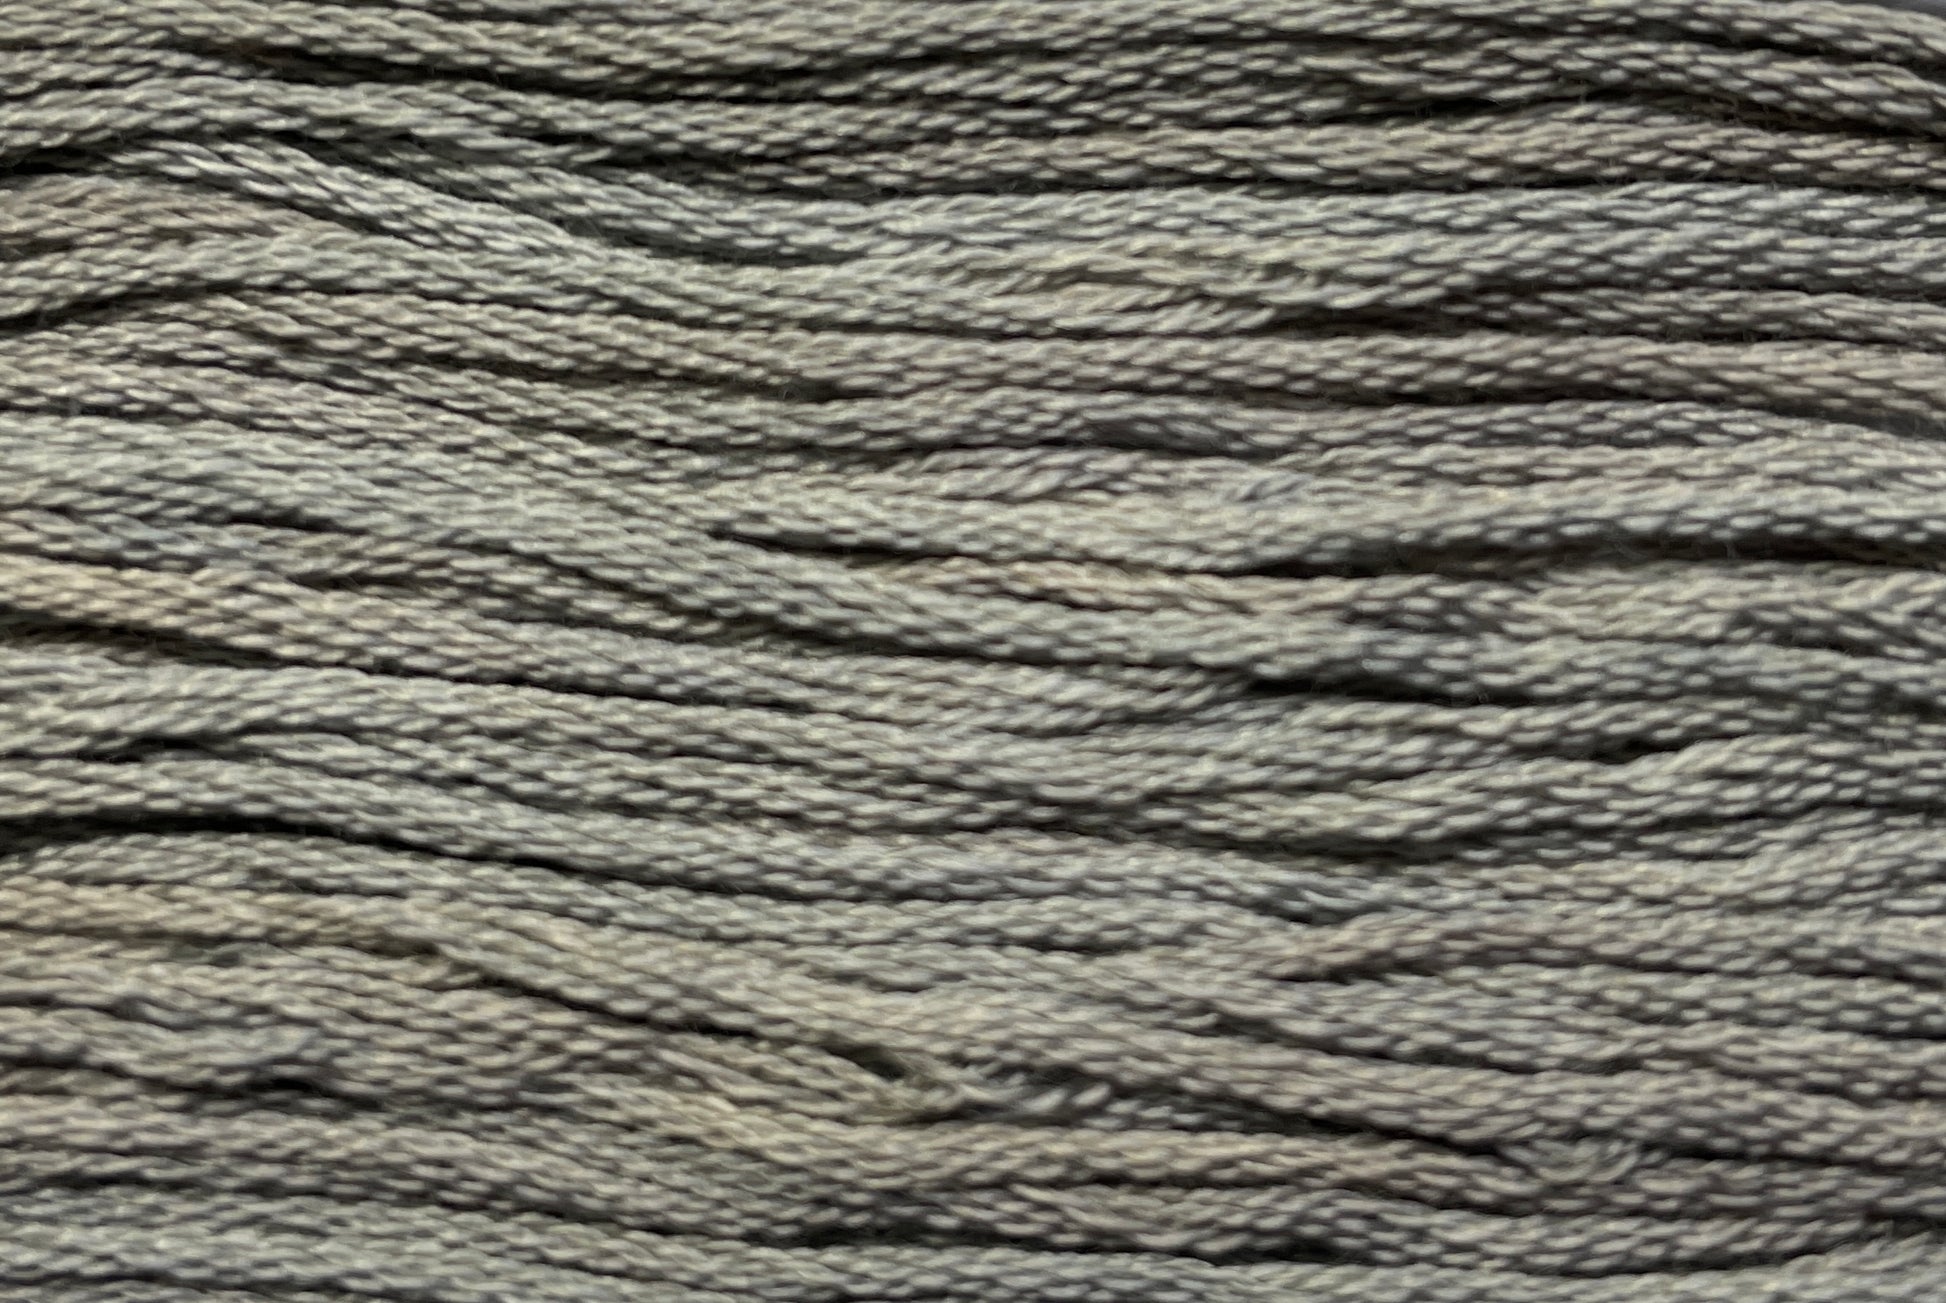 Barn Grey - Gentle Arts Cotton Thread - 5 yard Skein - Cross Stitch Floss, Thread & Floss, Thread & Floss, The Crafty Grimalkin - A Cross Stitch Store